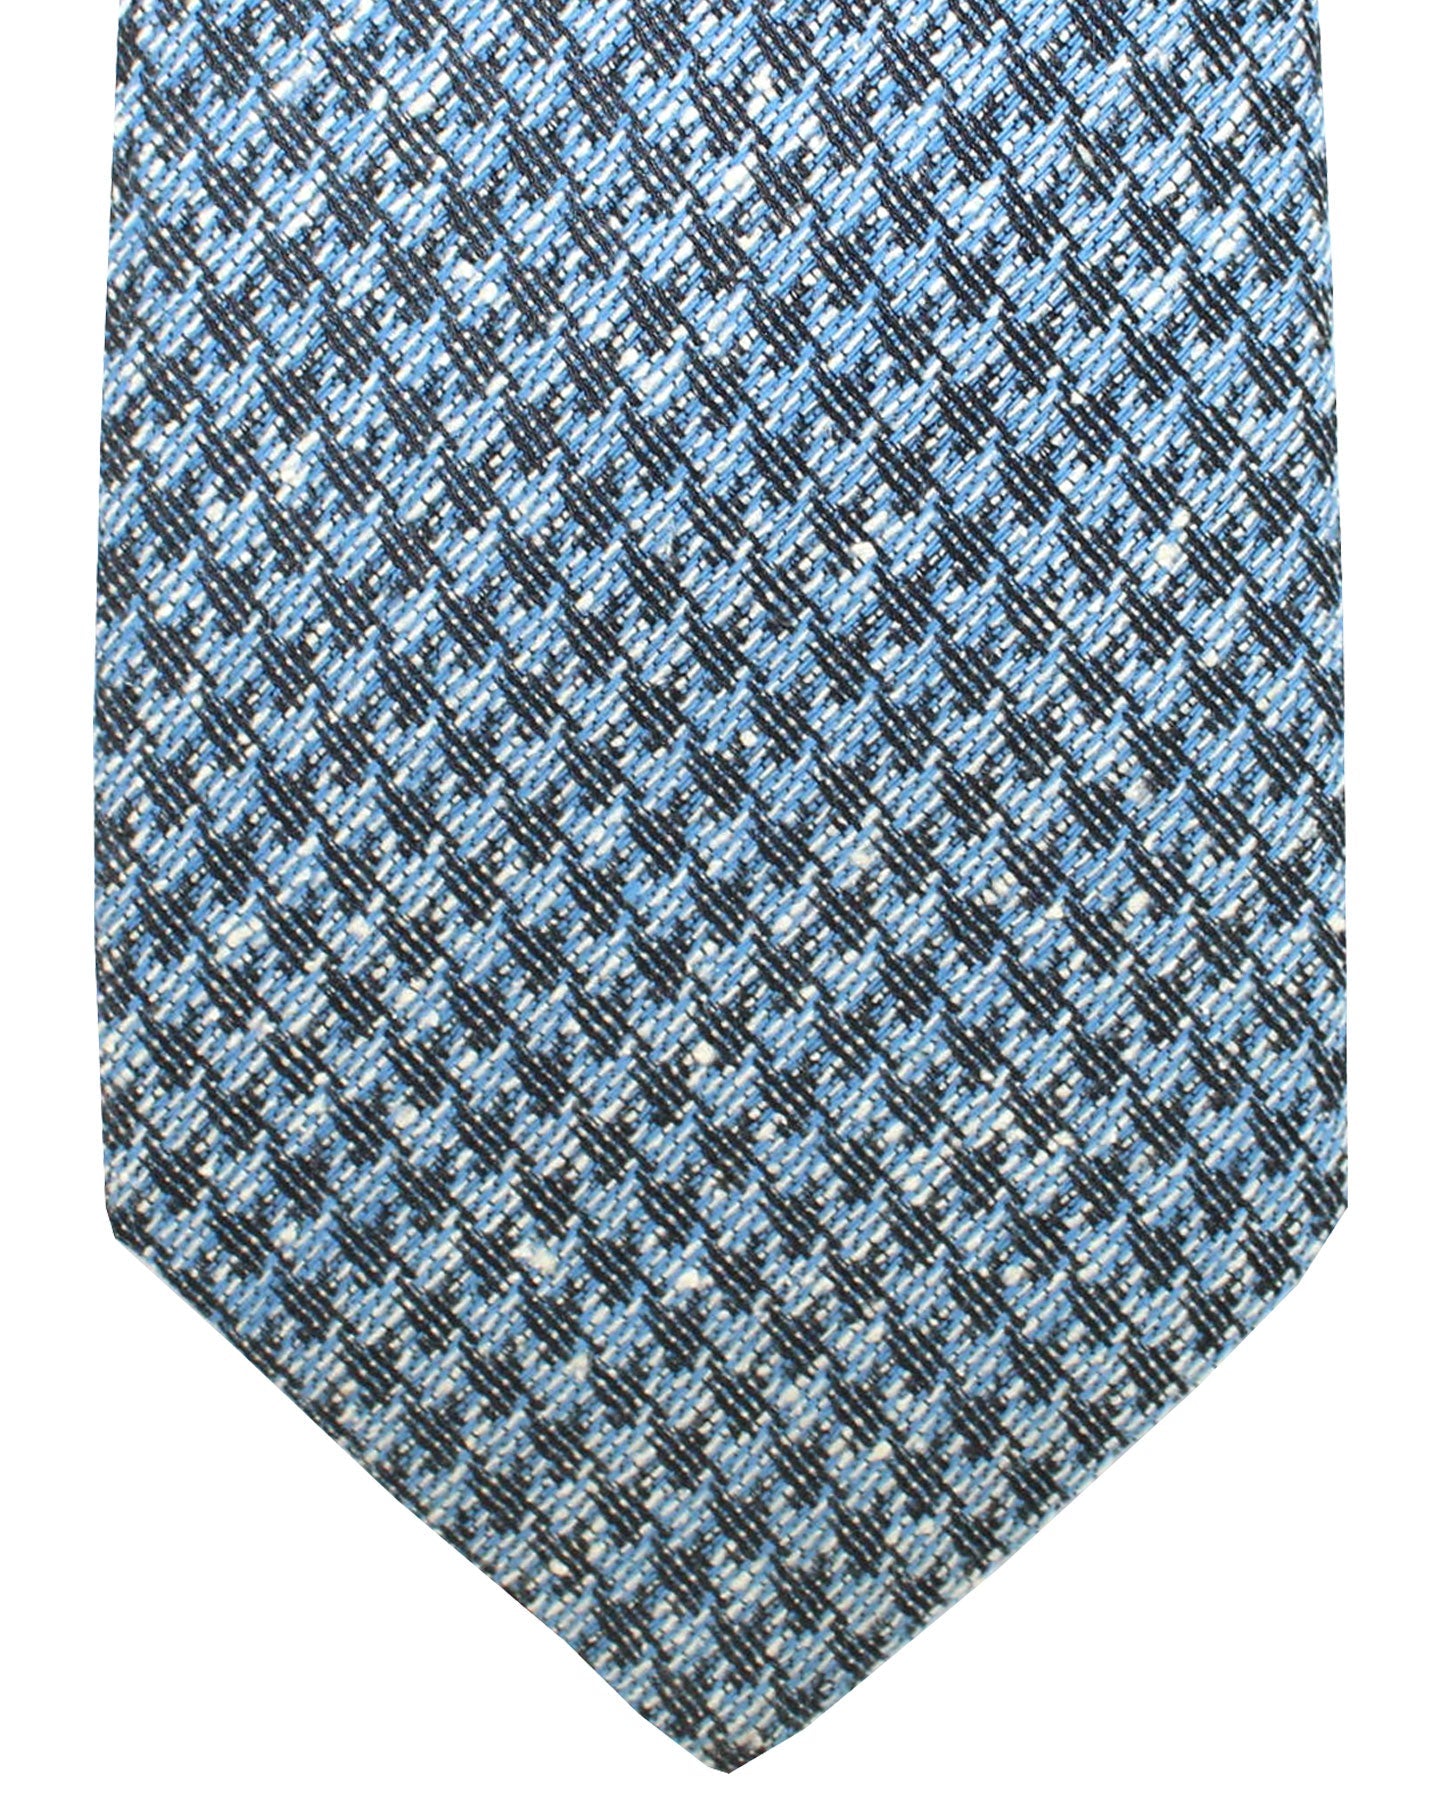 Ungaro Silk Tie Blue Houndstooth - Narrow Cut Designer Necktie